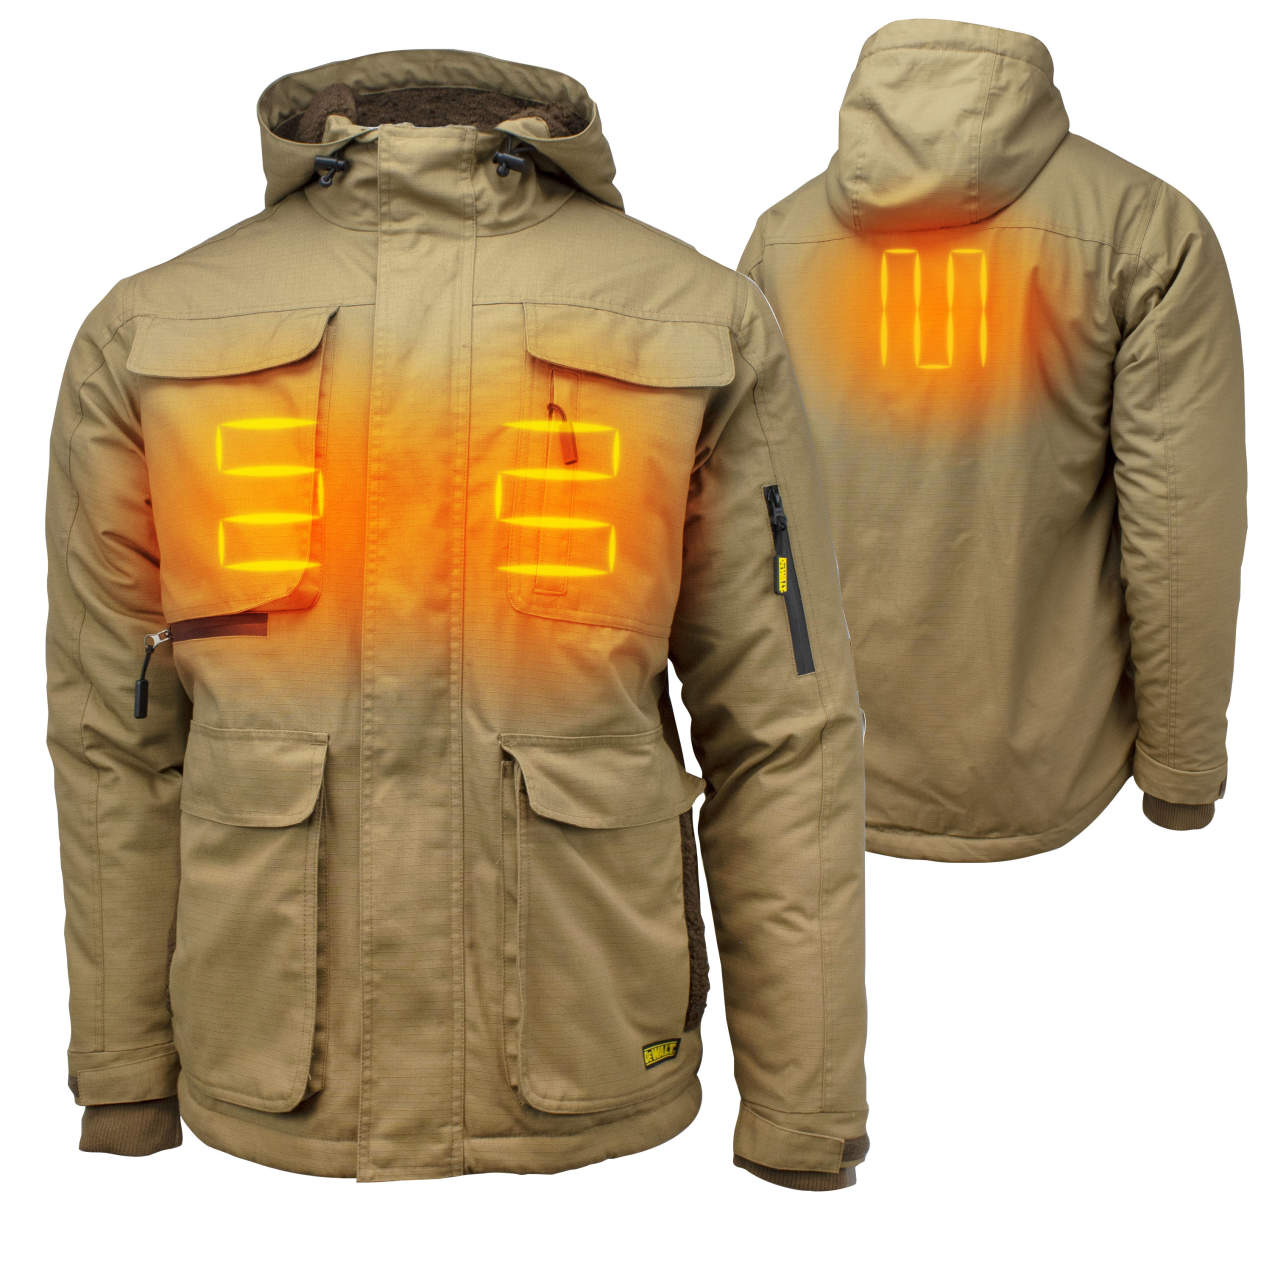 DEWALT® DCHJ091D1 - Men's Heavy Duty Ripstop Heated Jacket Kitted